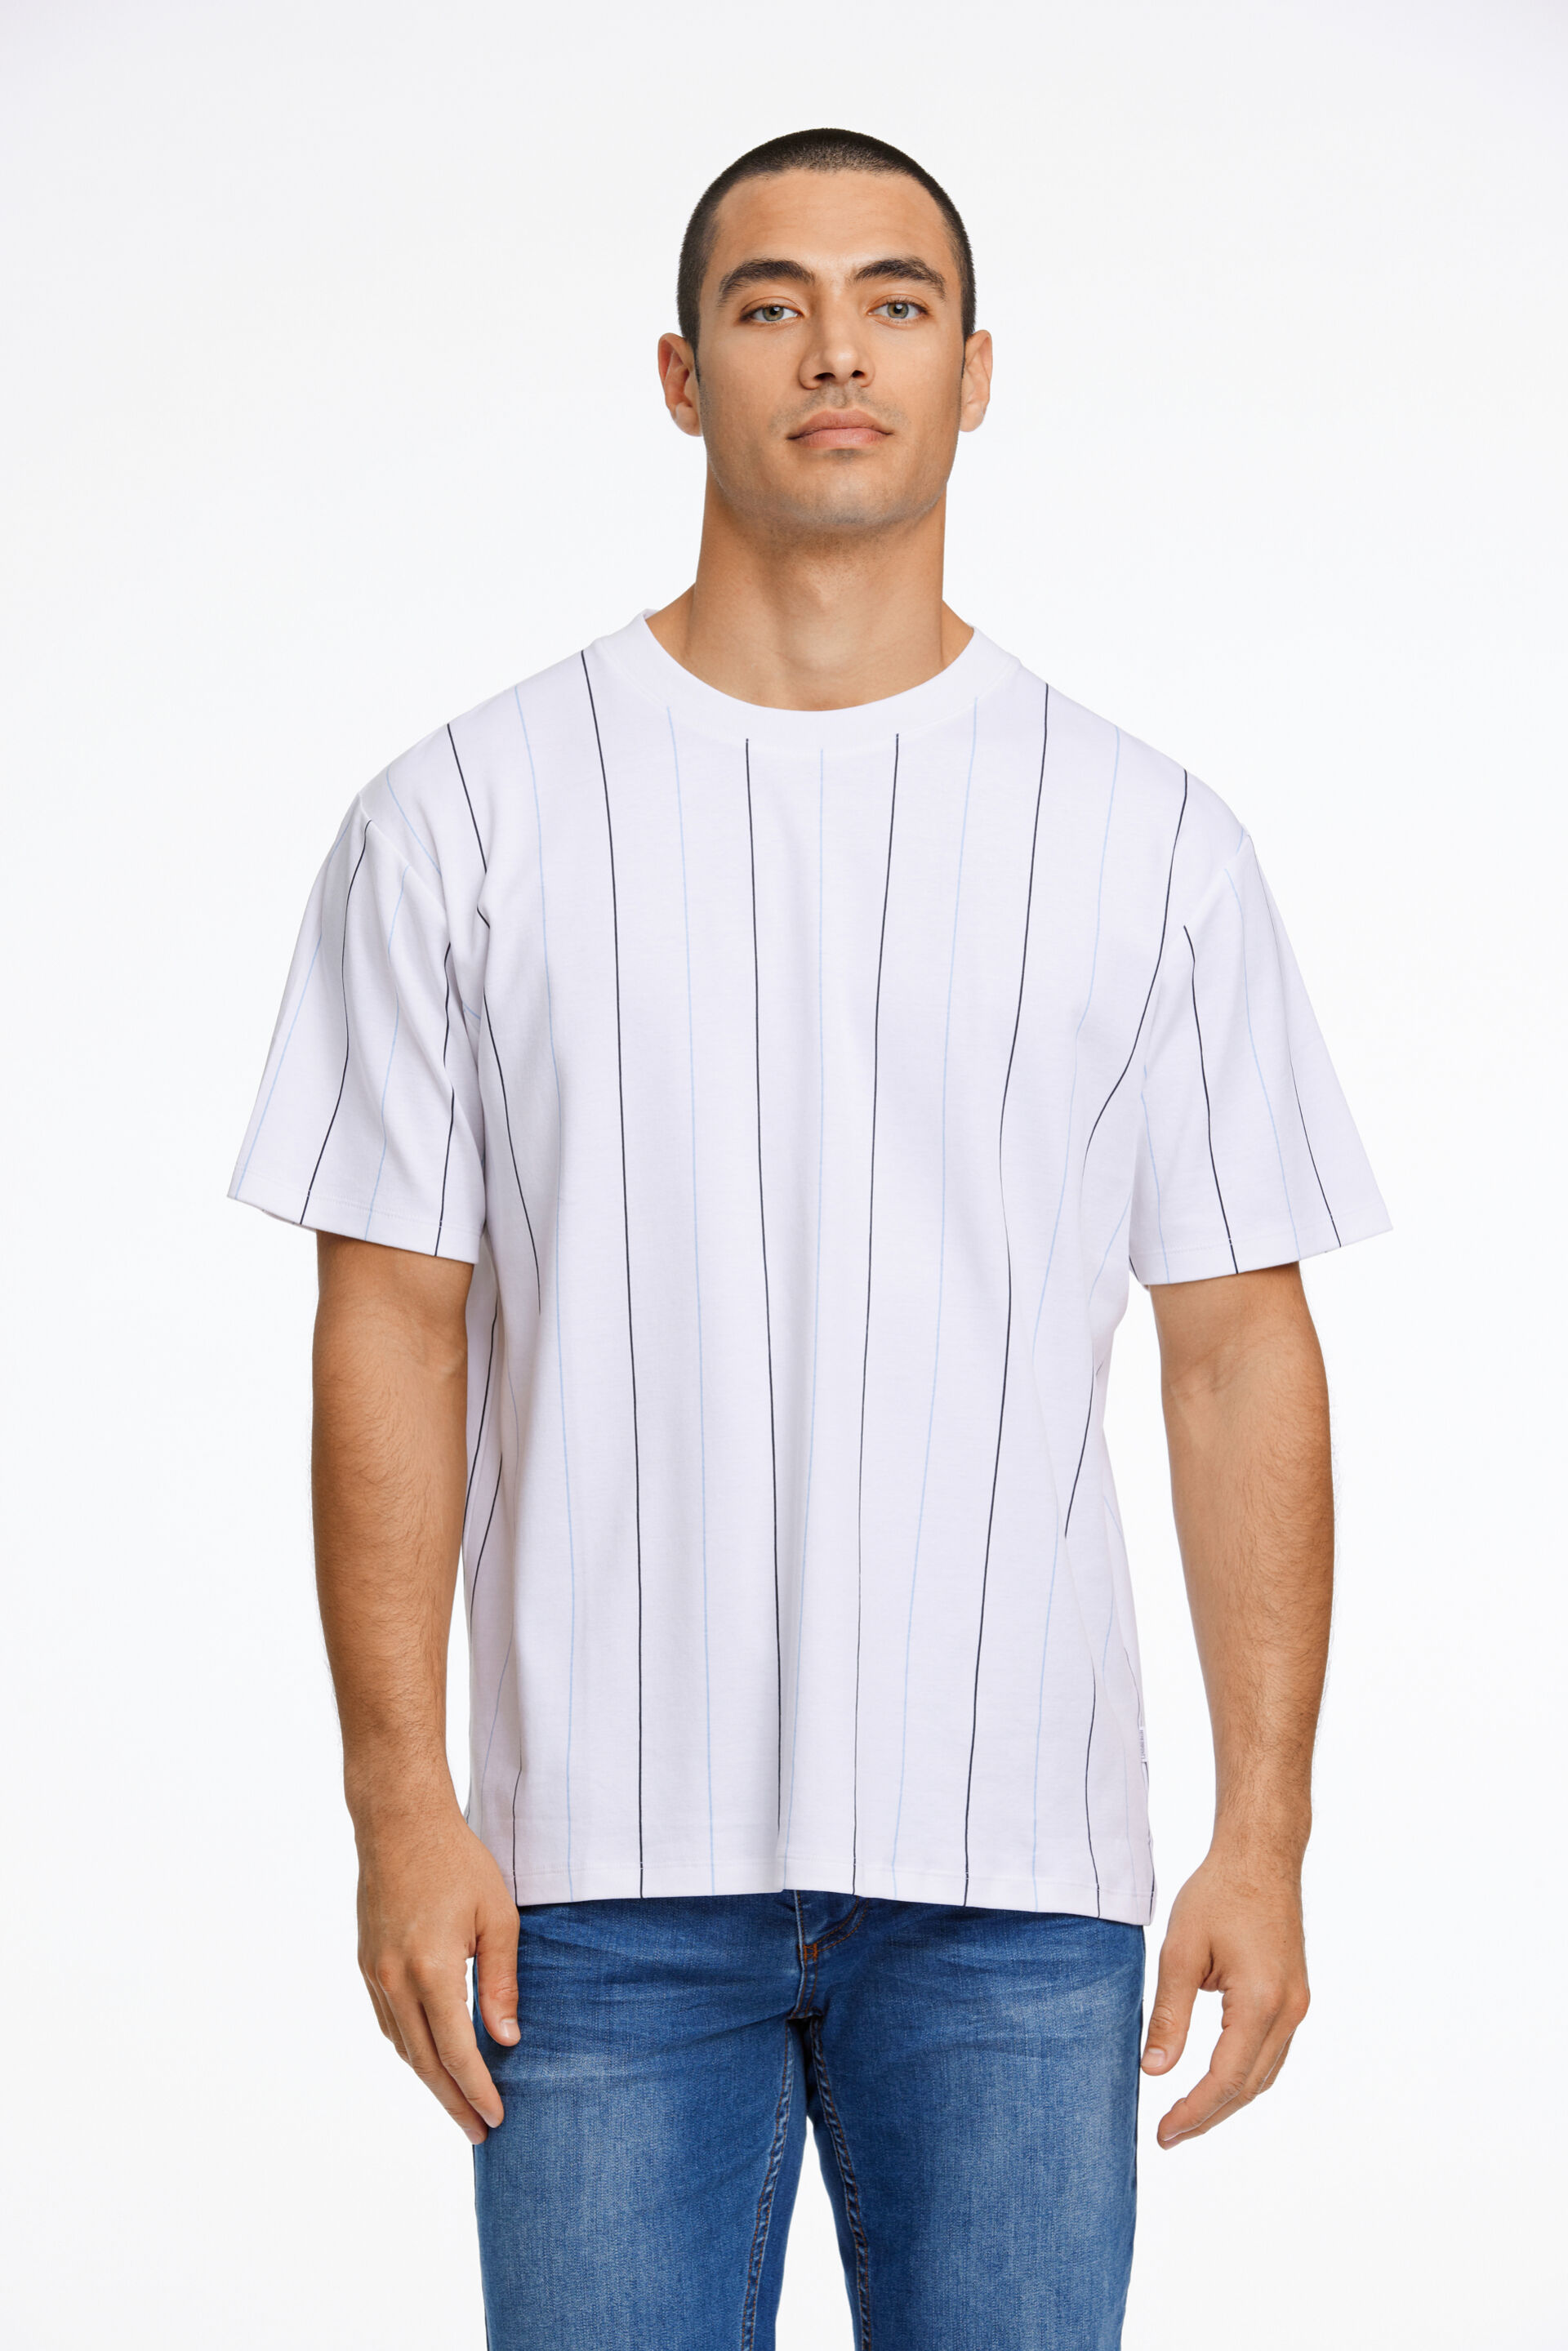 T-shirt T-shirt Hvid 30-400199